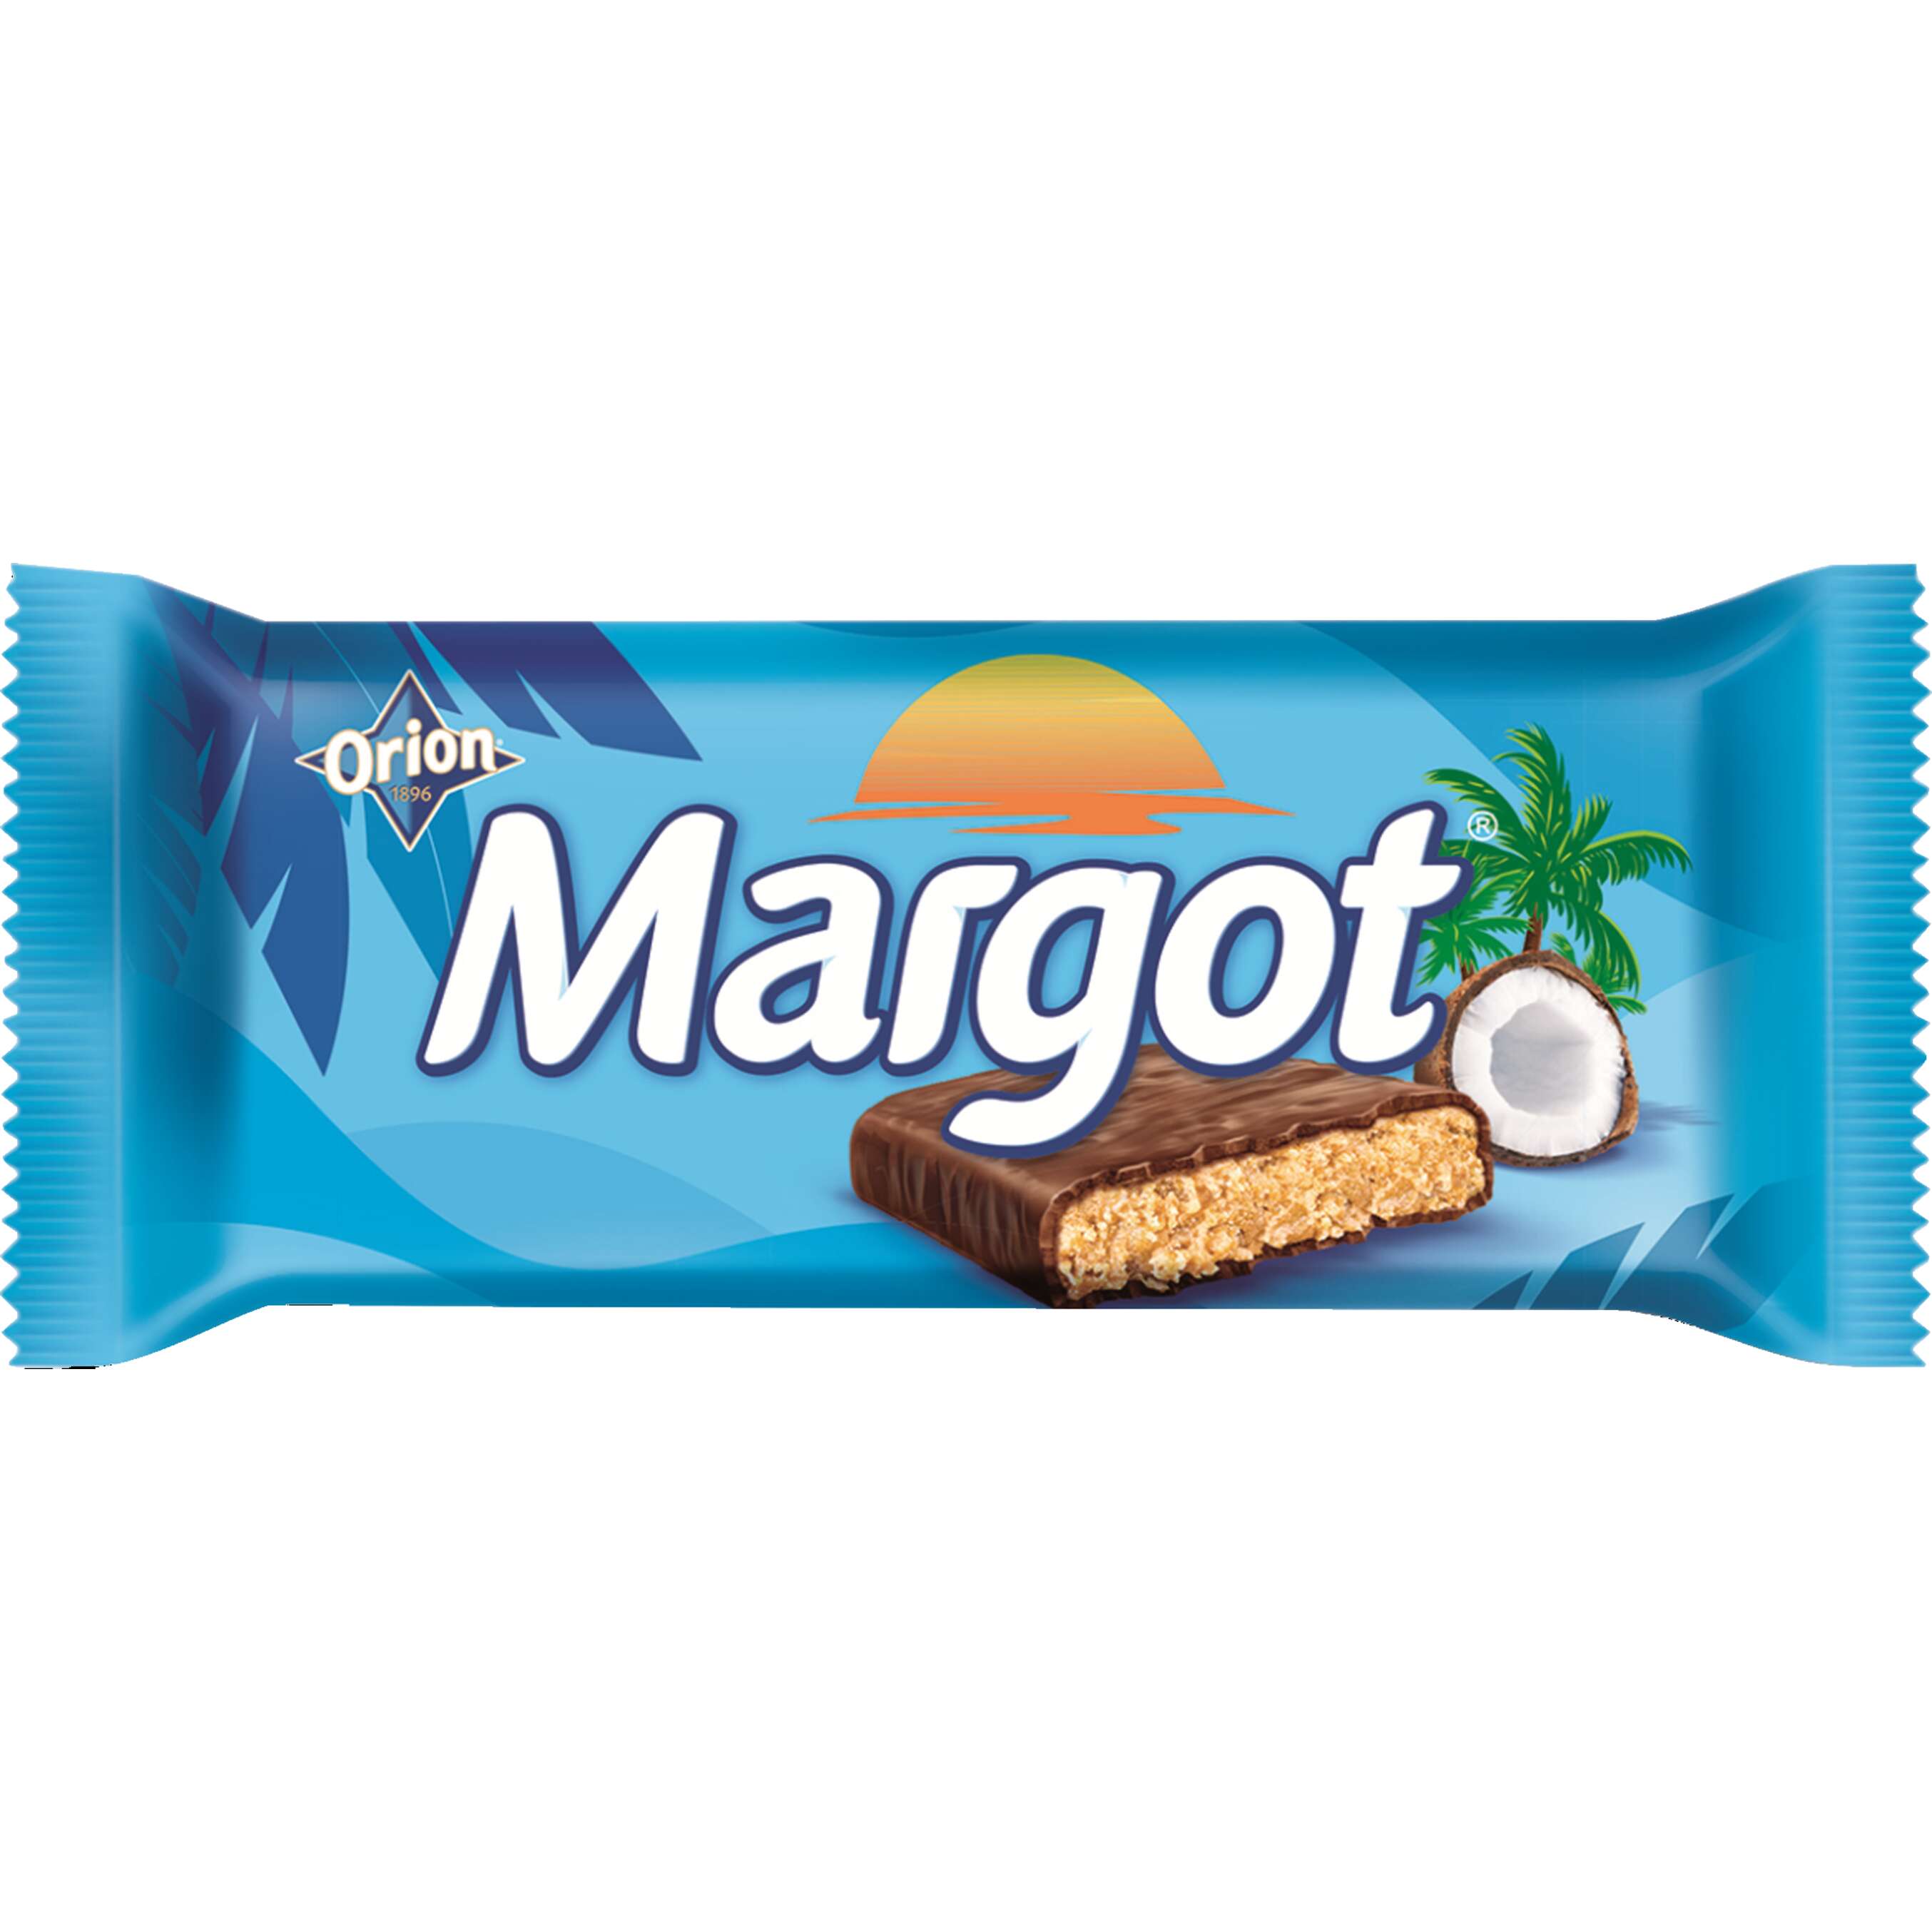 Zobrazit nabídku Orion Margot Čokoládová tyčinka